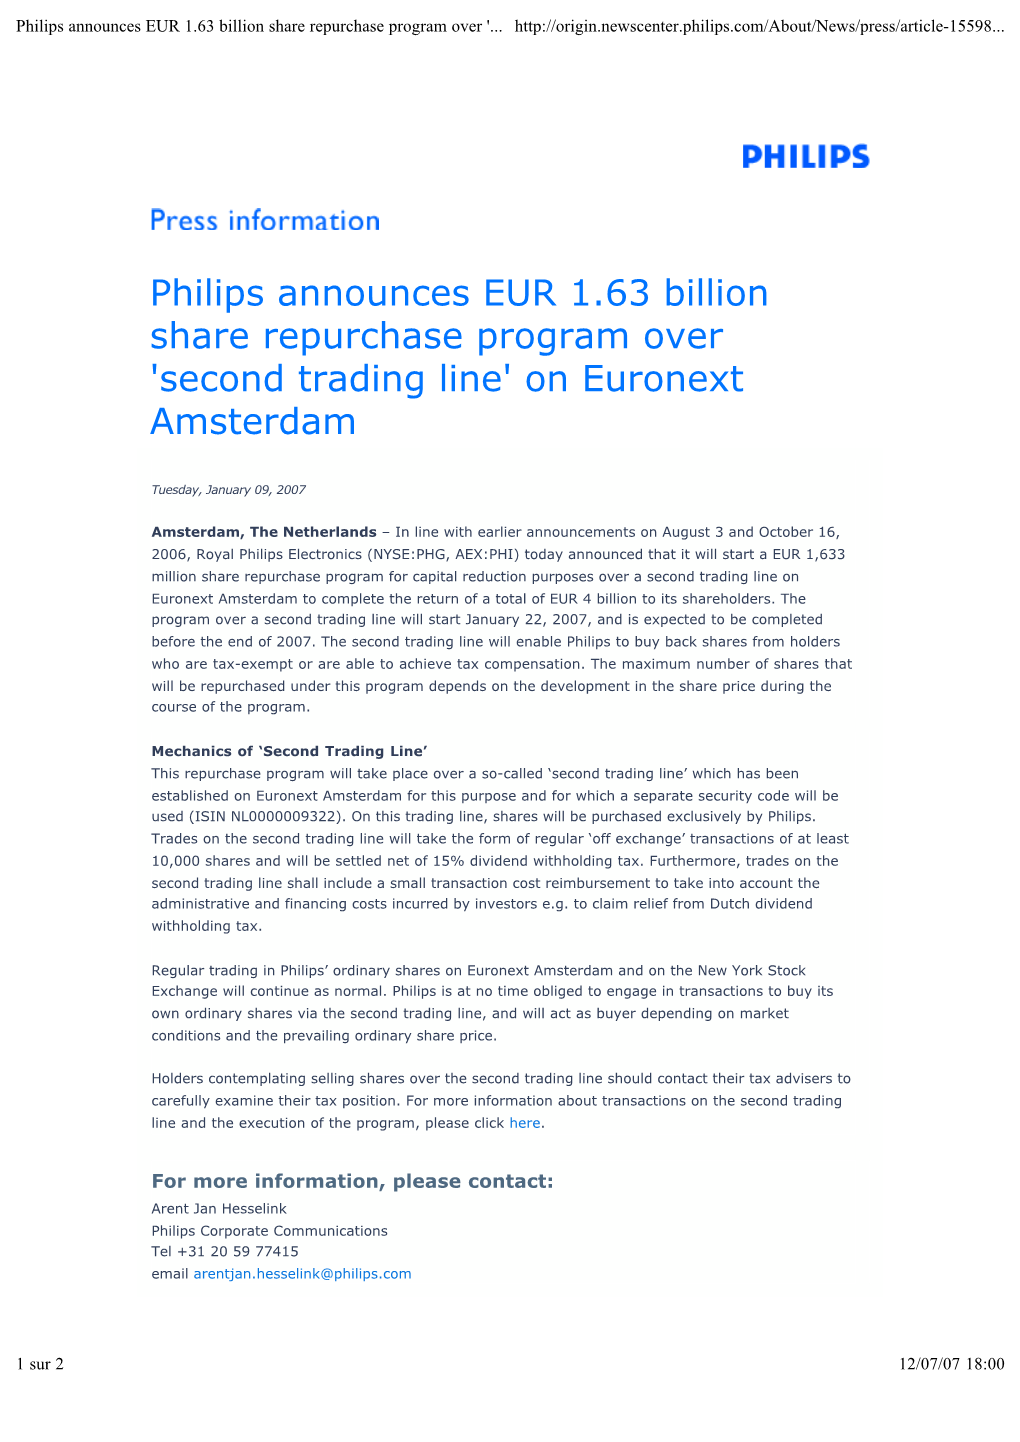 Philips Announces EUR 1.63 Billion Share Repurchase Program Over '